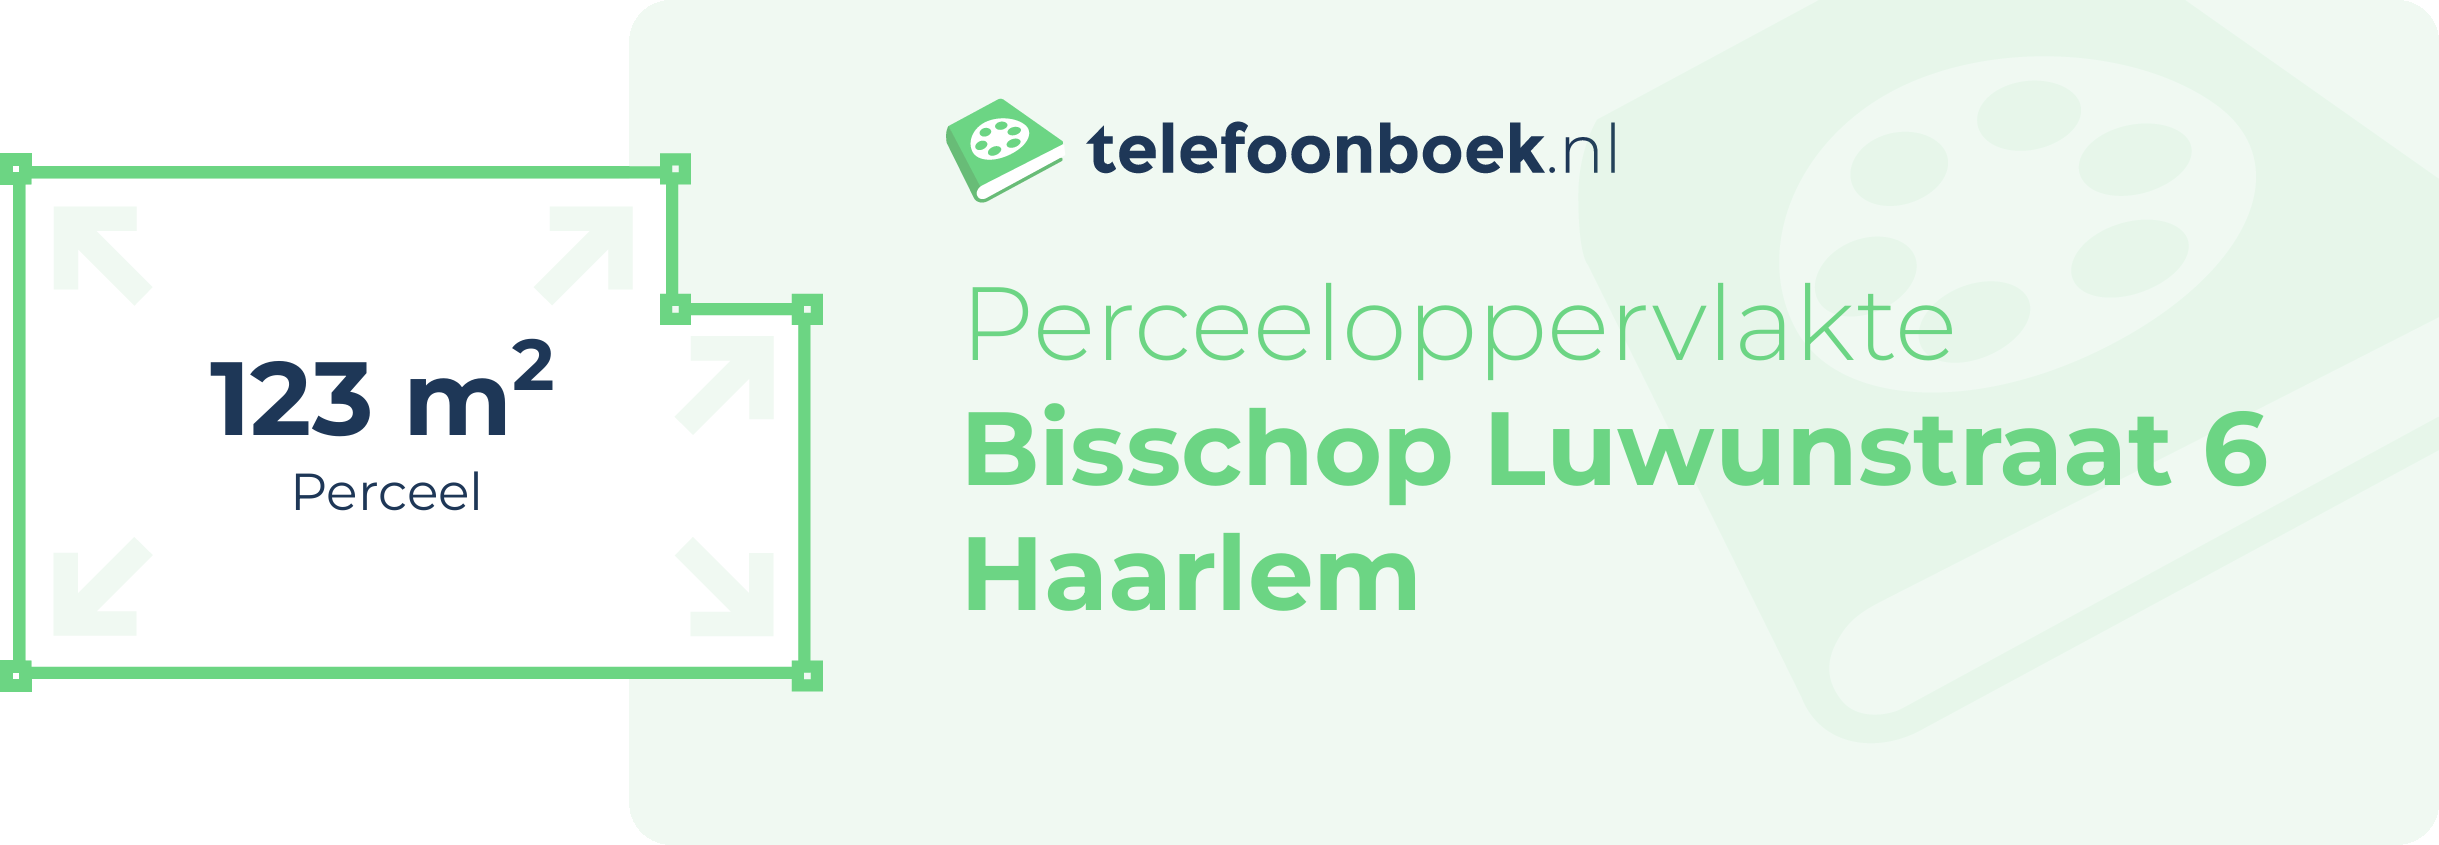 Perceeloppervlakte Bisschop Luwunstraat 6 Haarlem